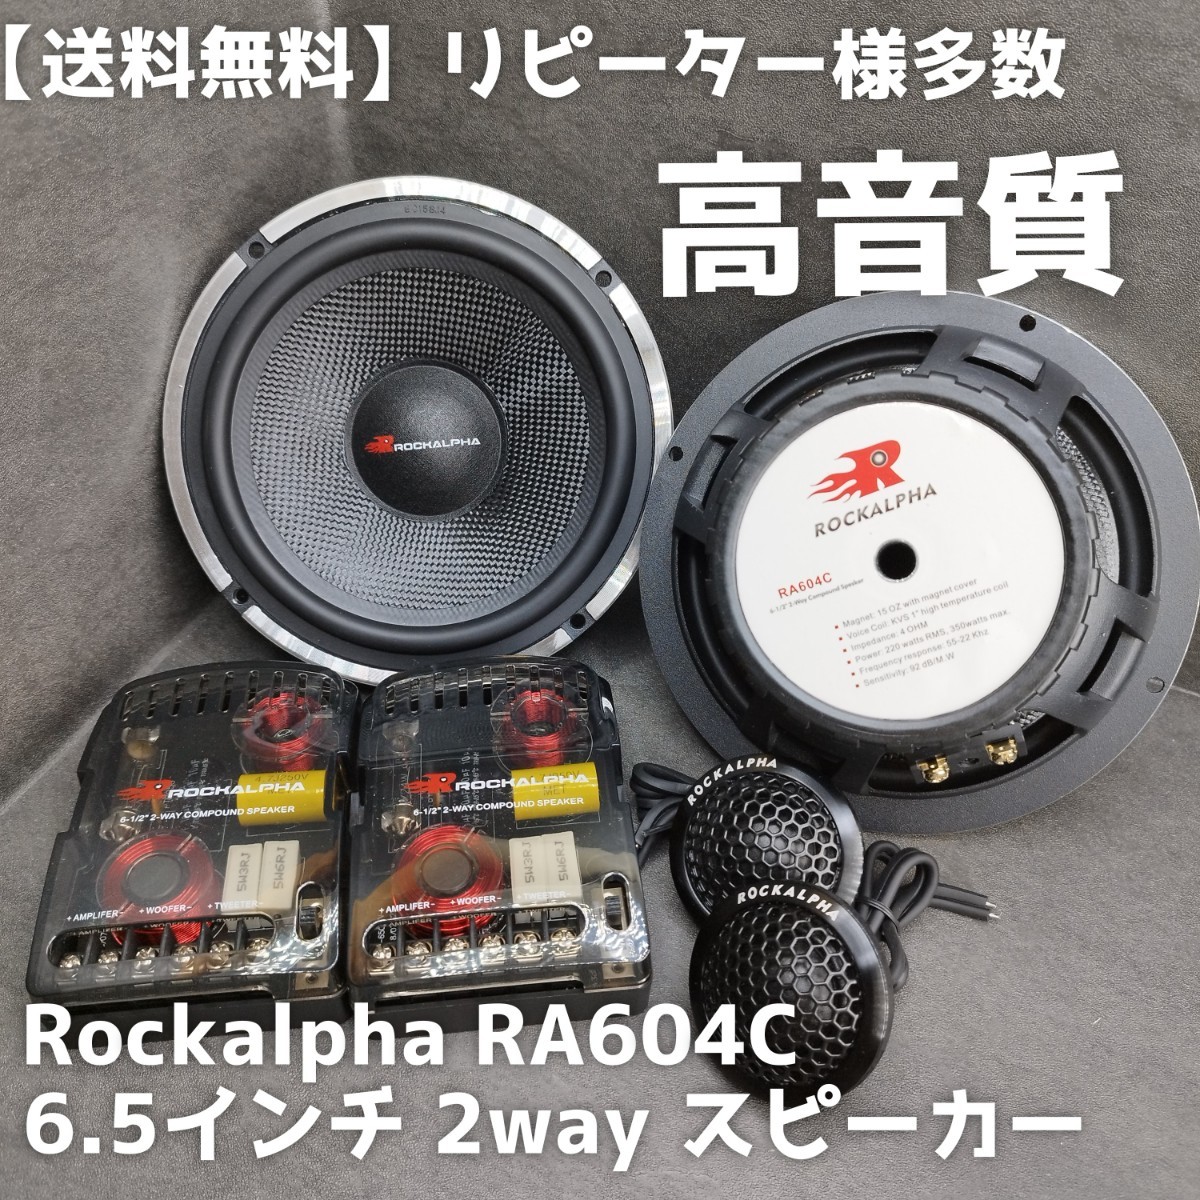 【送料無料】ハイエンド【高音質】Rockalpha RA604C 6.5インチ 17cm 2way セパレート スピーカー カーオーディオ ツイーター ウーファー_画像1